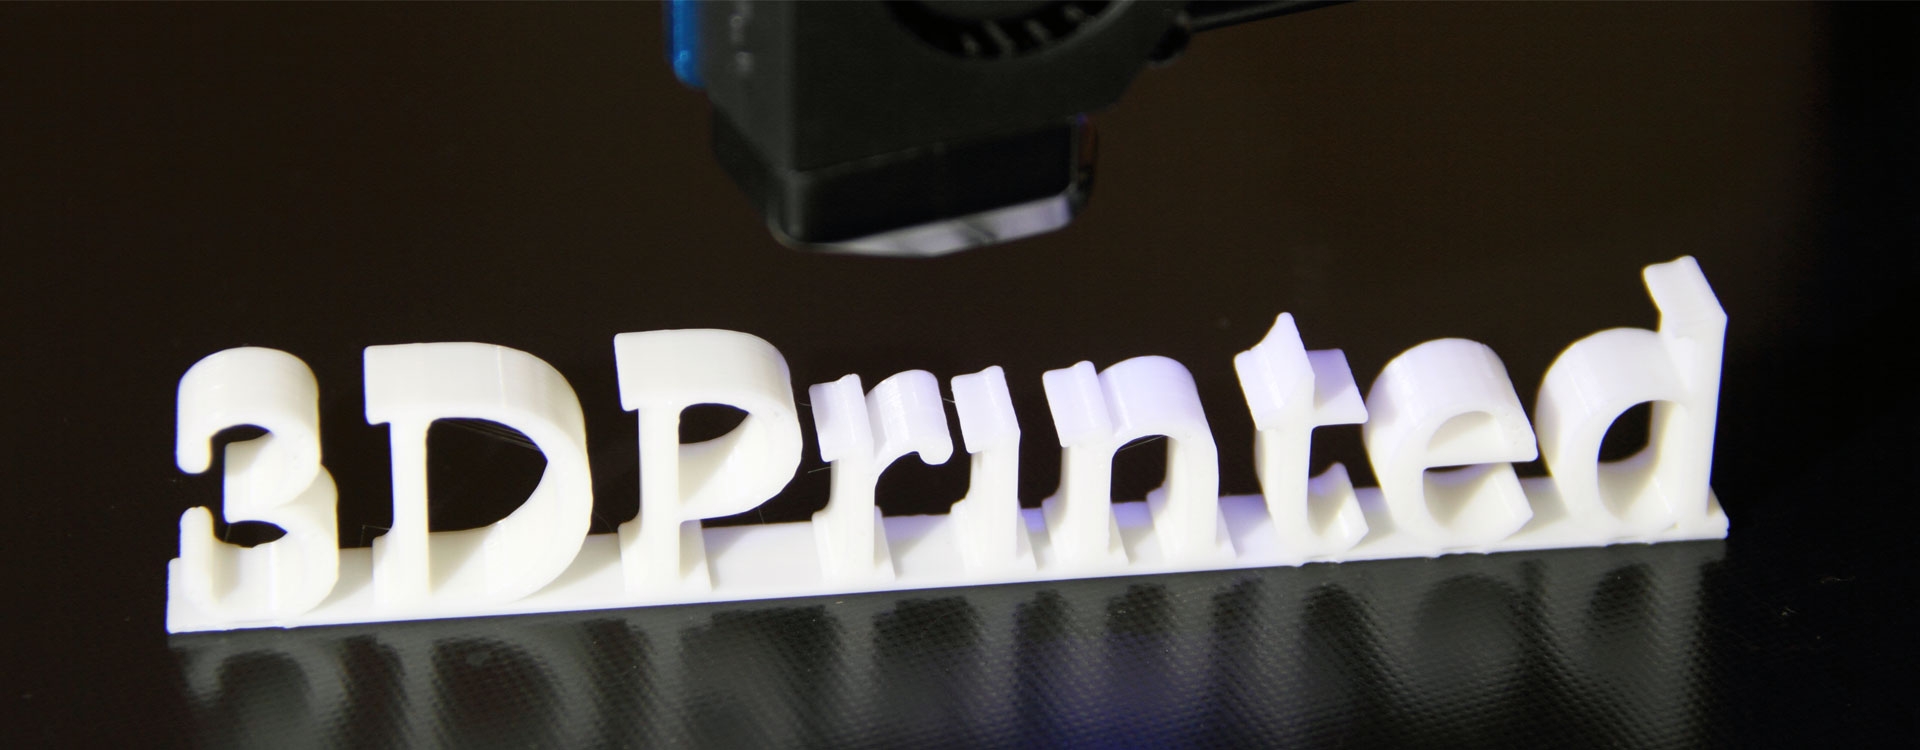 Что можно напечатать на 3D-принтере?